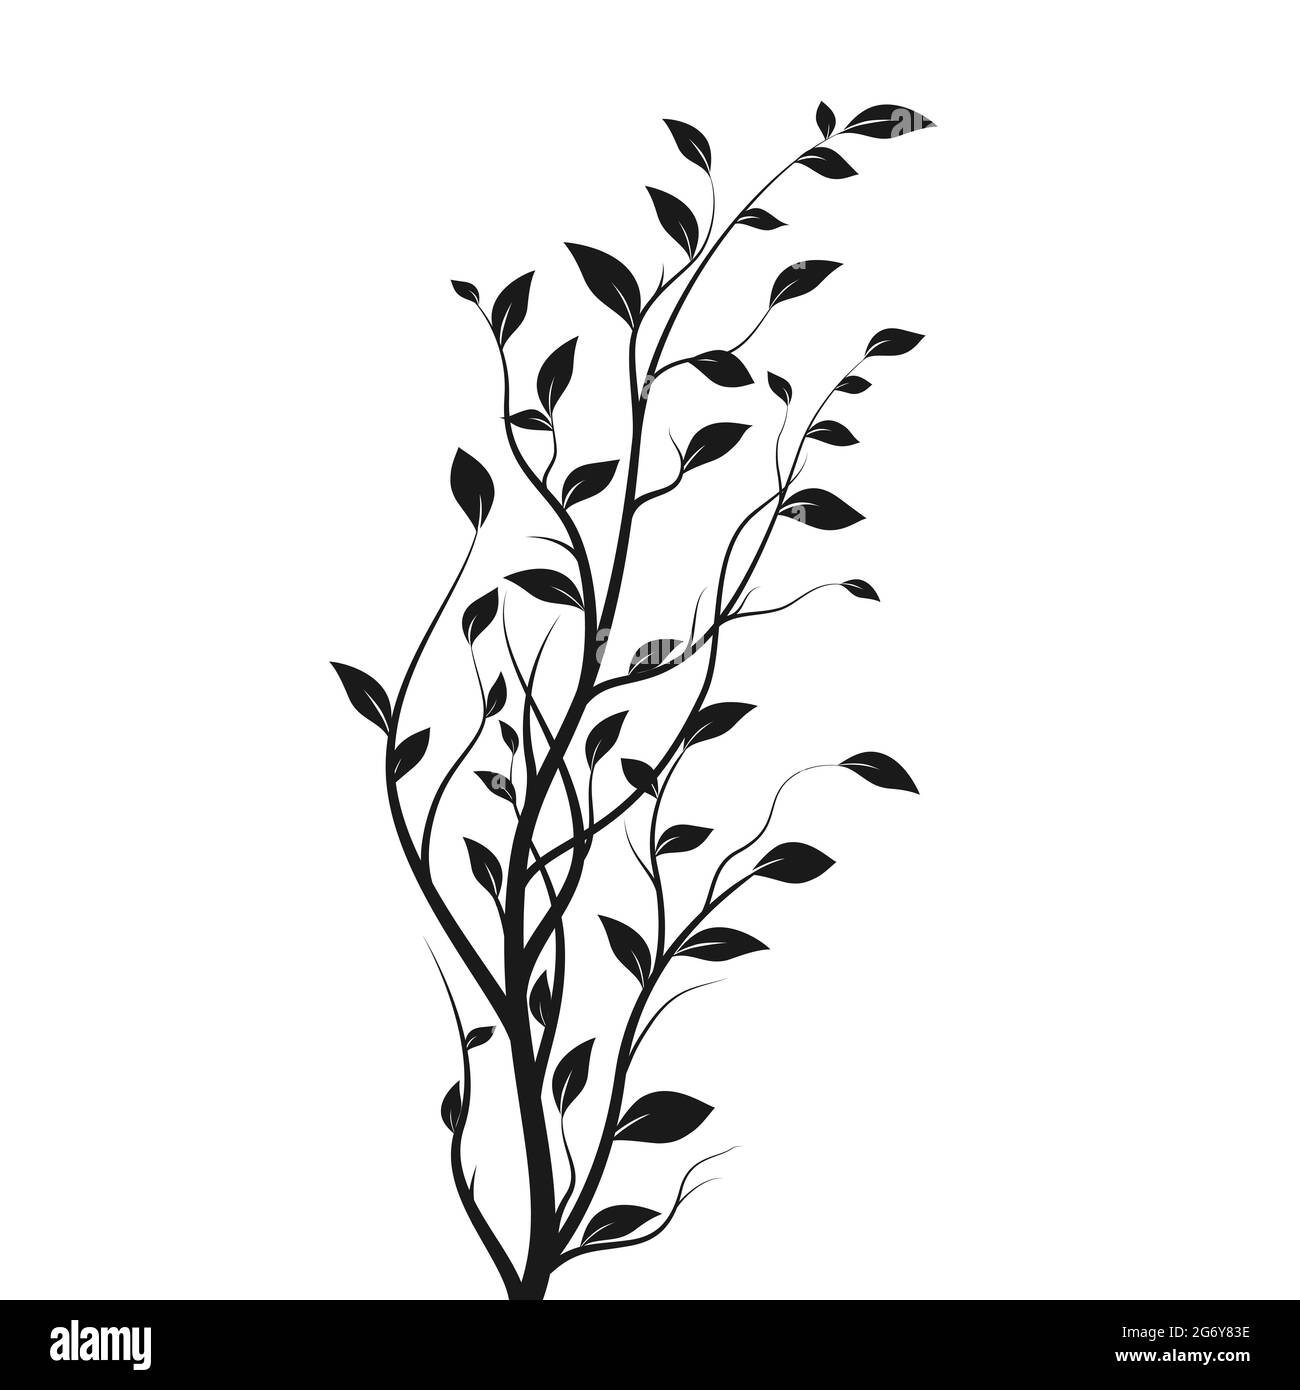 Zweig des Silhouettenbaums. Bush Silhouette isoliert auf weißem Hintergrund mit vielen Blättern. Vektorgrafik Stock Vektor